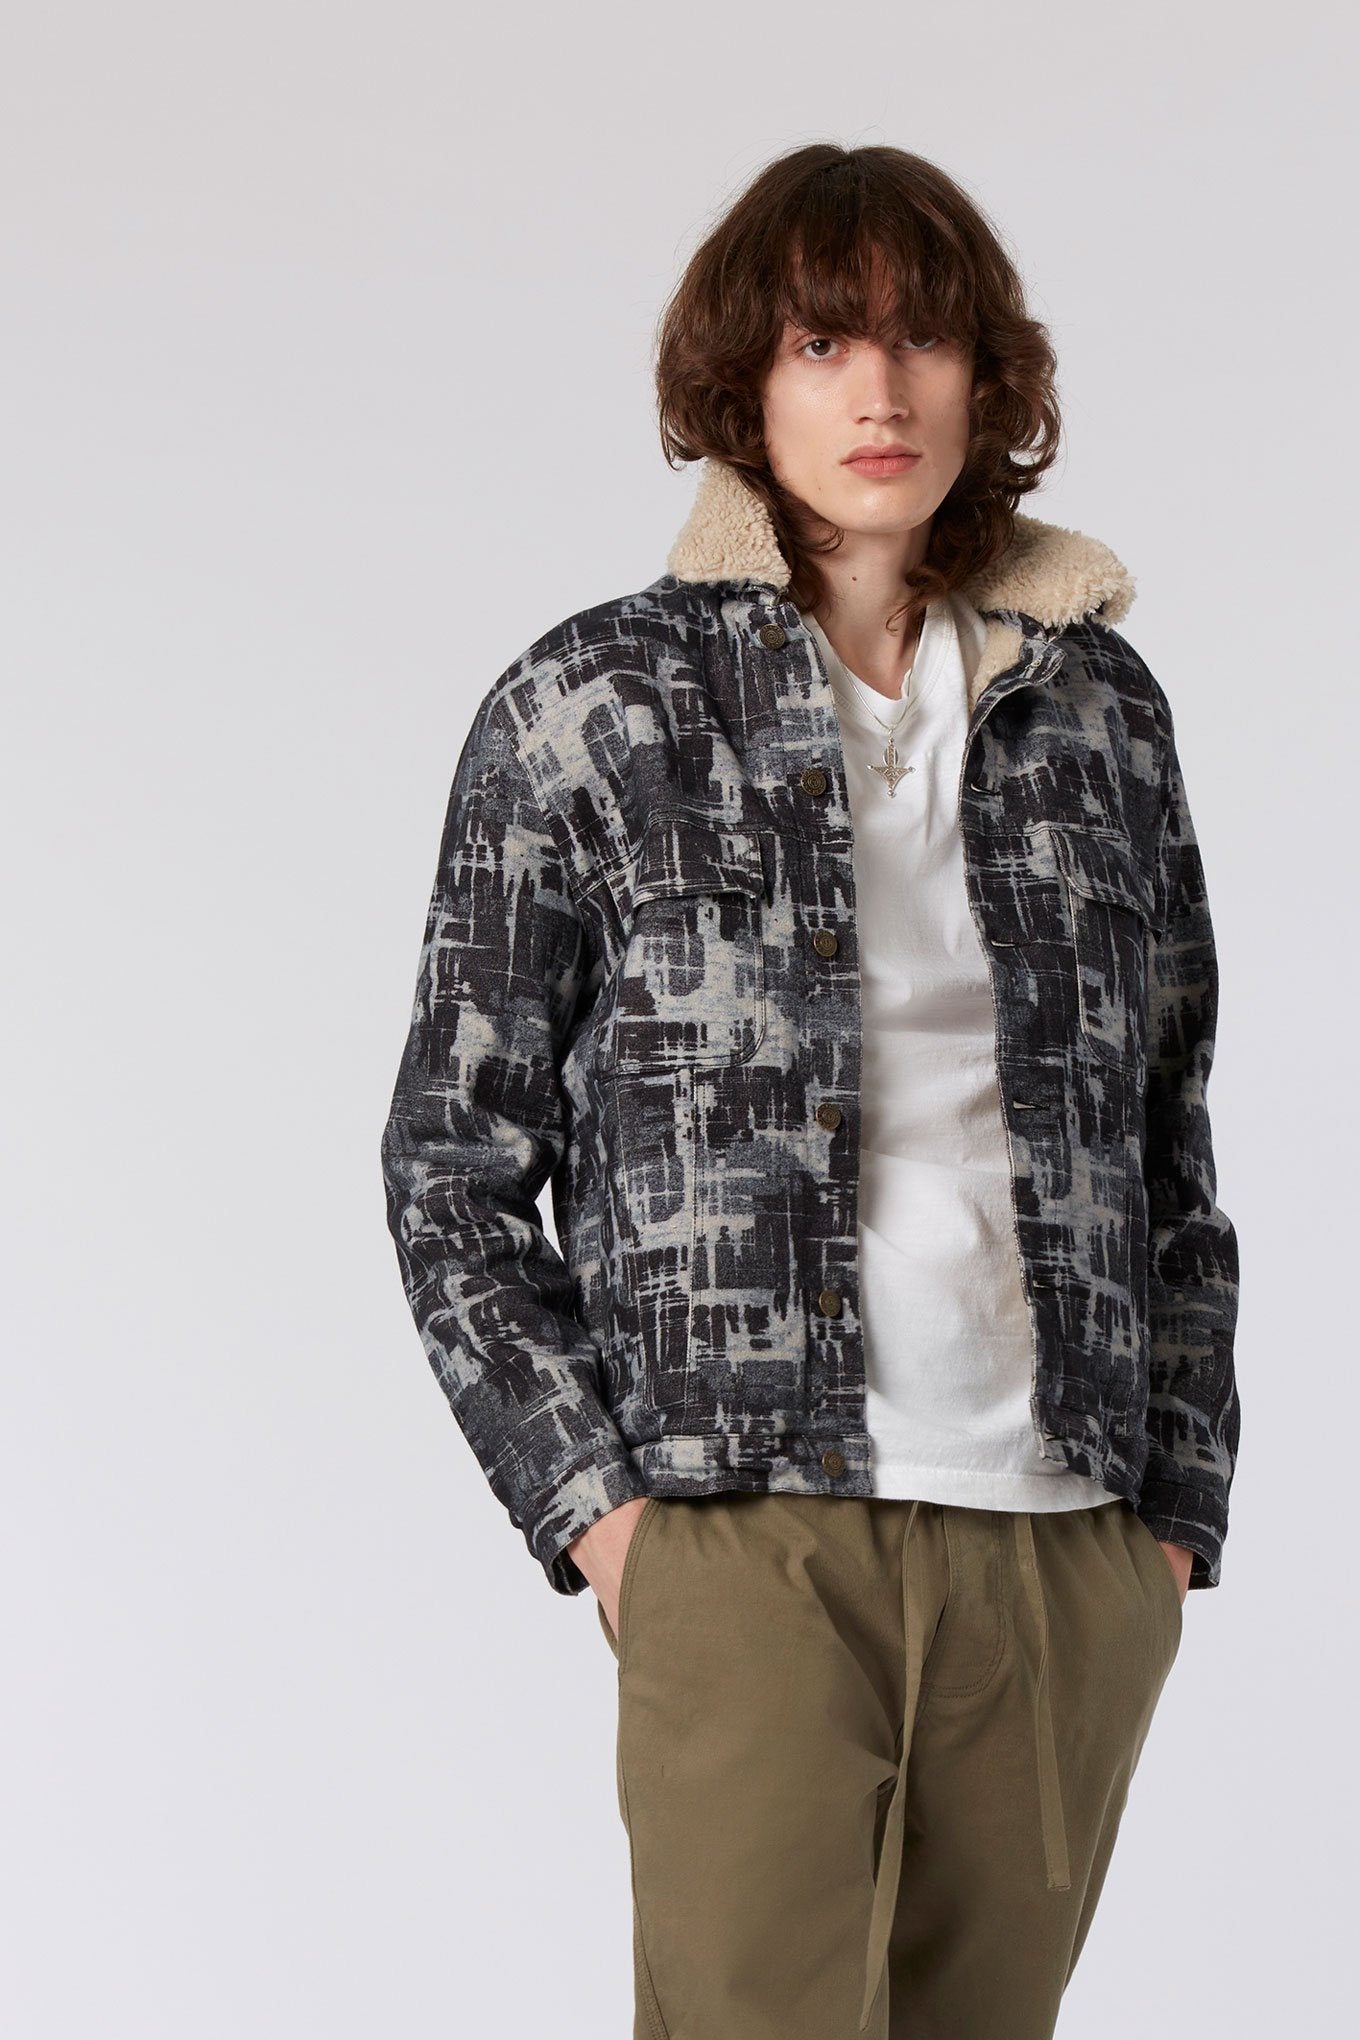 EVER - Fleece Lined Organic Cotton Jacket Indigo, LARGE